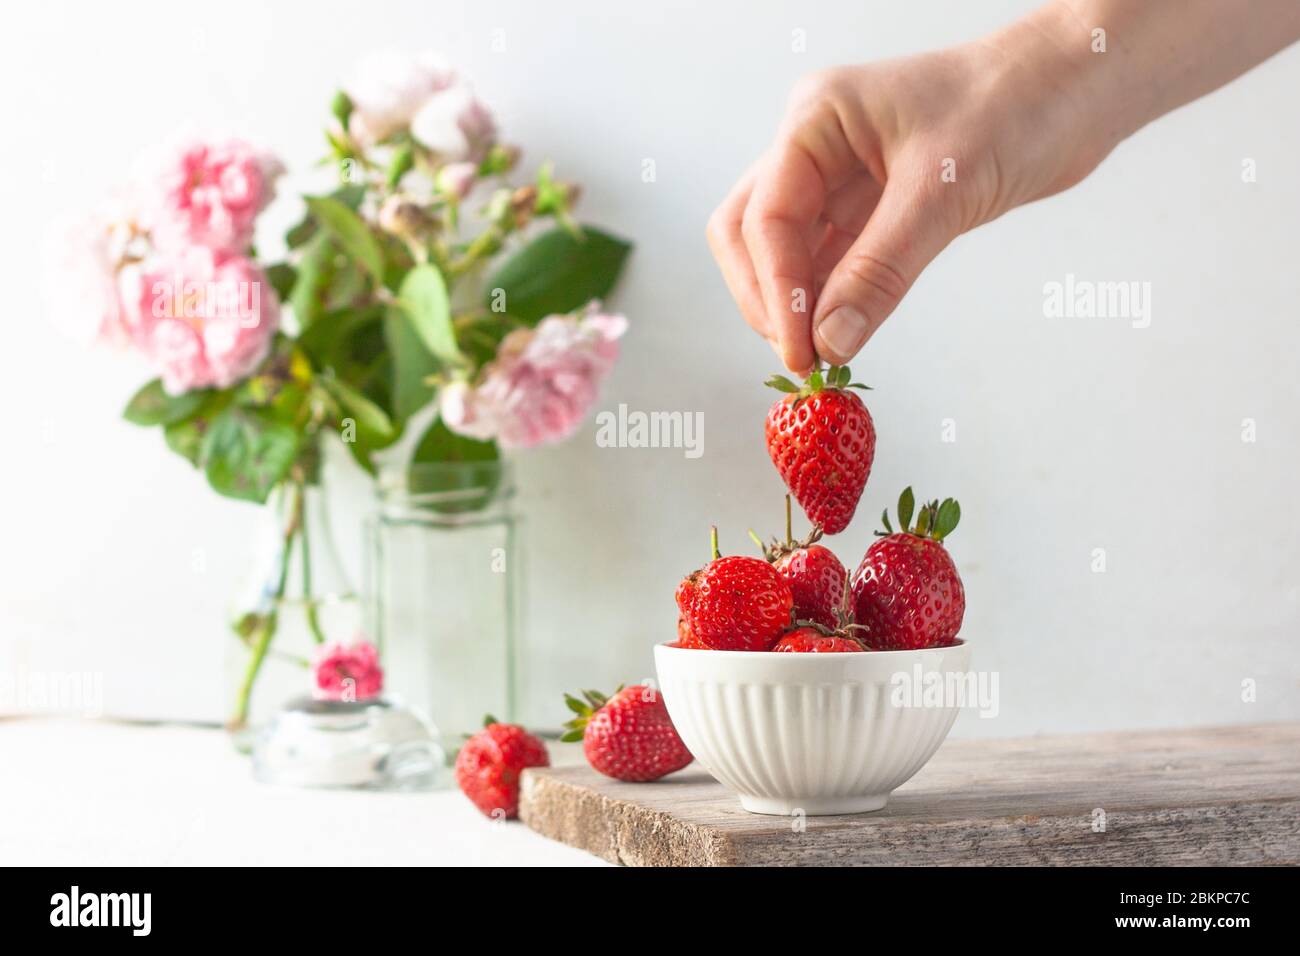 Frau nimmt oder legt eine Strohbeere in Obstschale voll von frischen, roten, jucigen Erdbeeren. Pastellfarbene Dekoration. Stockfoto